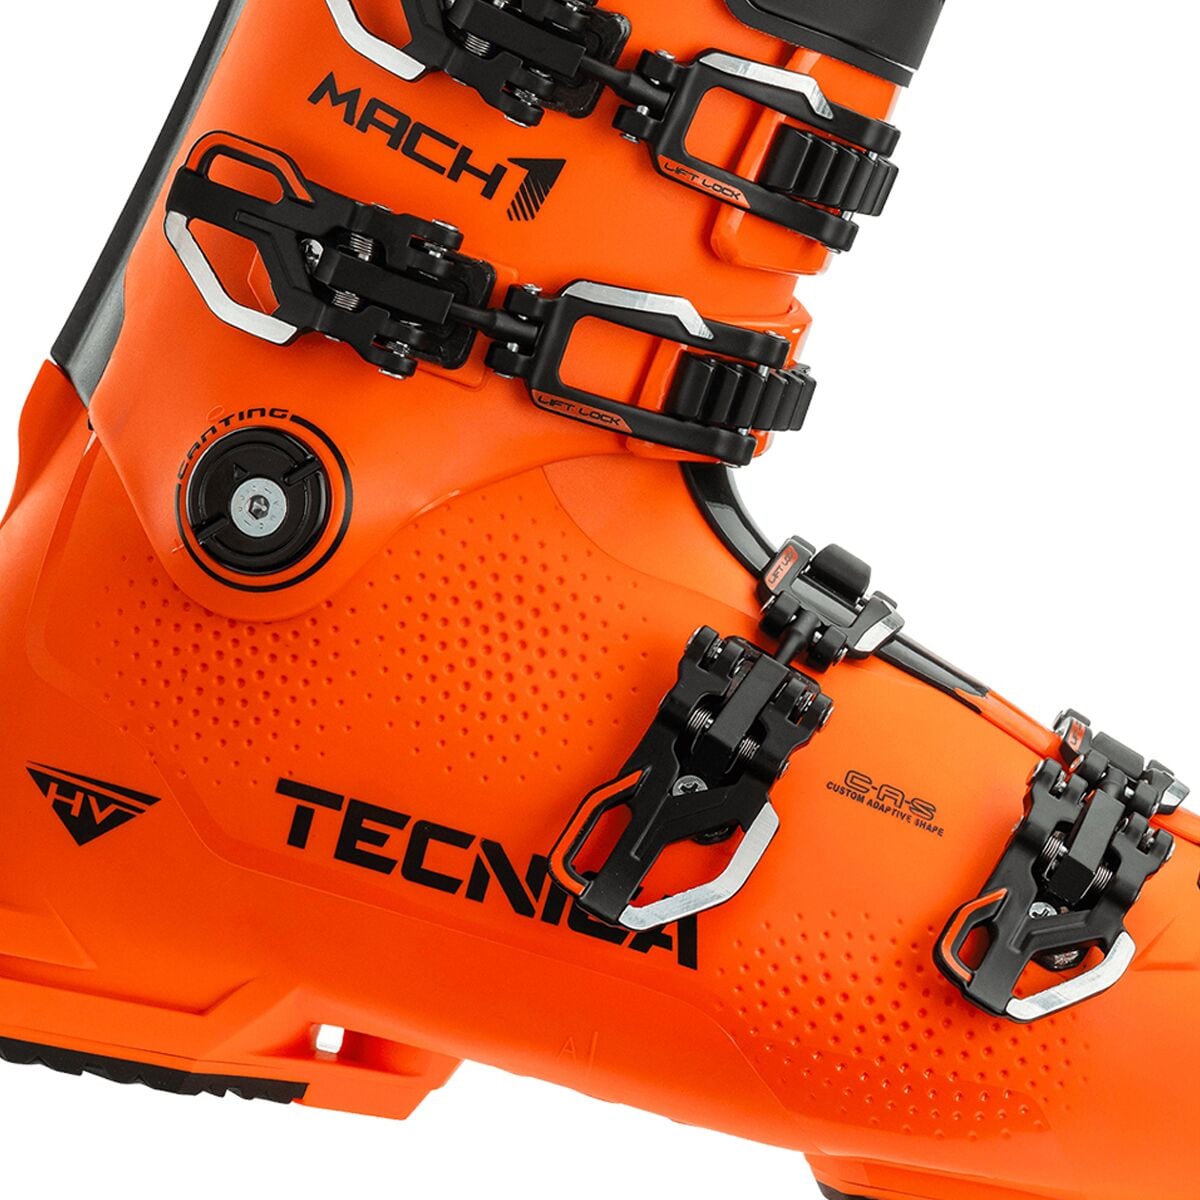 Tecnica Mach1 HV 130 Ski Boot - 2022 - Ski